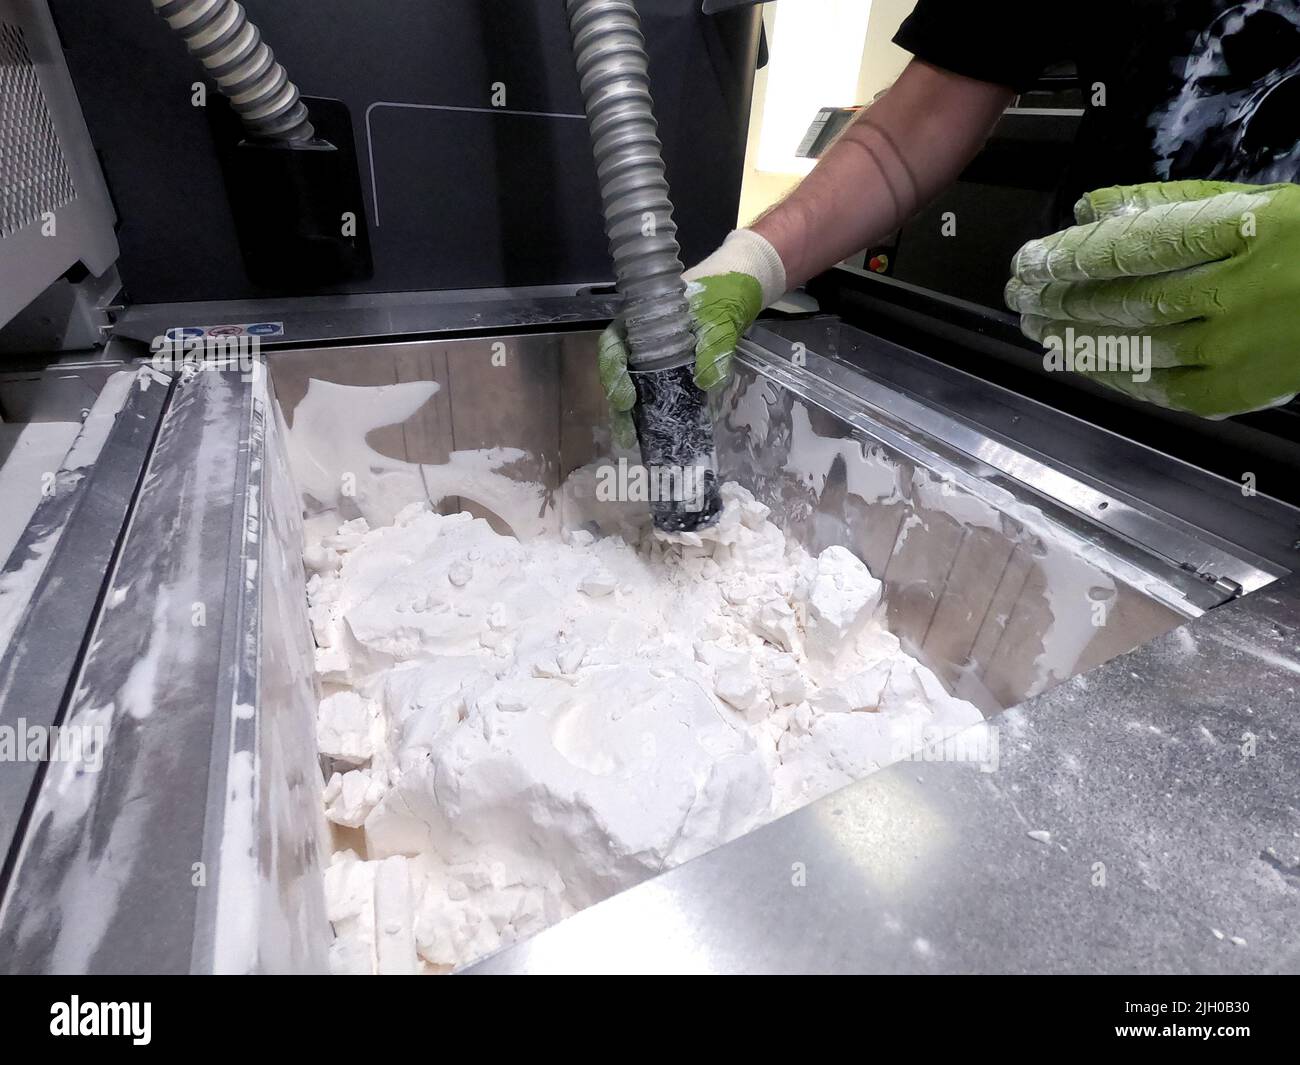 Ein Mann, der mit einem funktionierenden Staubsauger arbeitet, um das weiße  Pulver aus Polyamid von einem Modell zu reinigen, das auf einem 3D-Drucker  in einem 3D-Drucker gedruckt wurde. Reinigung von Objekten, die